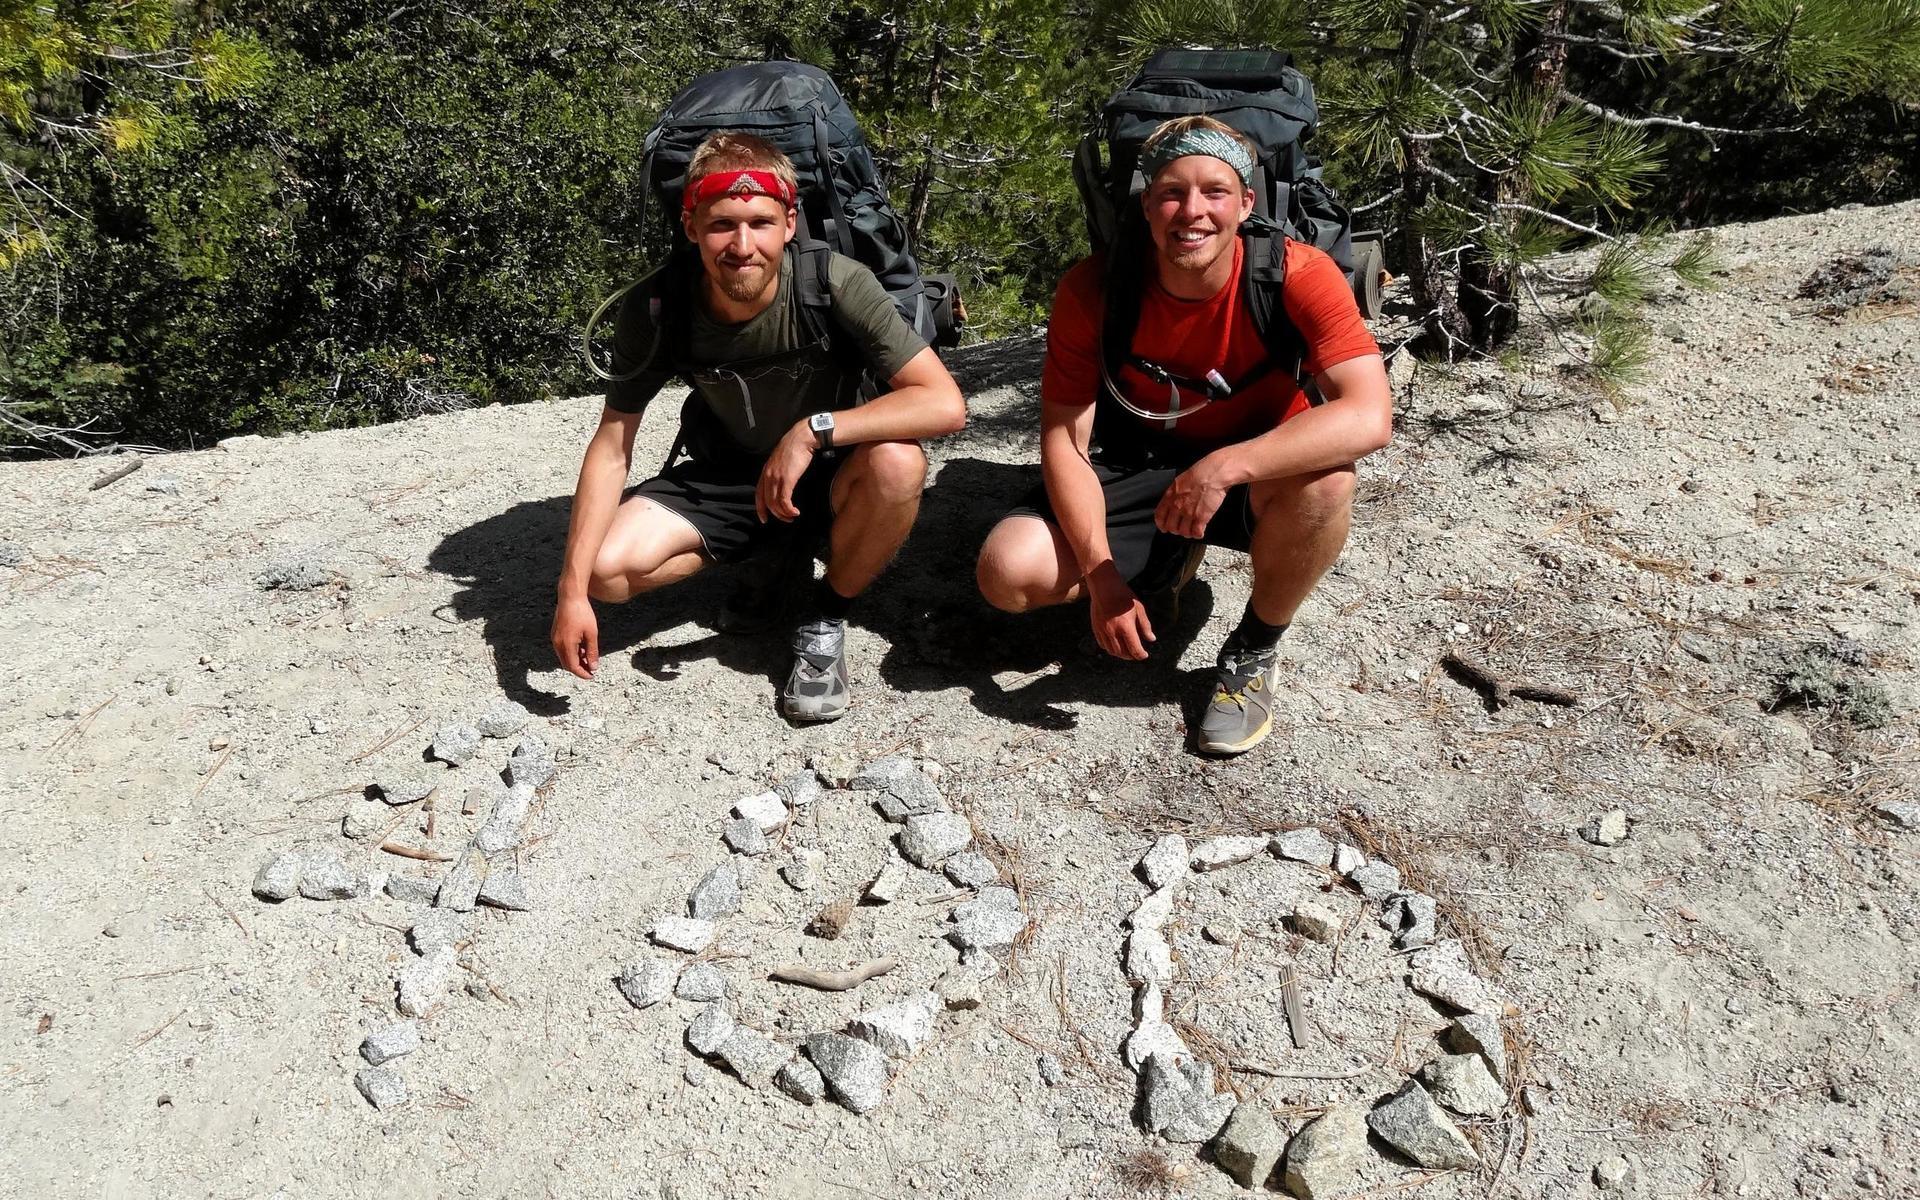 2013 gjorde Robin och Rasmus Nilsson – också från Halmstad – verklighet av Robins PCT-dröm. Från staden Campo på den mexikanska gränsen till Manning Park strax norr om USA:s gräns till Kanada är det drygt 400 mil.